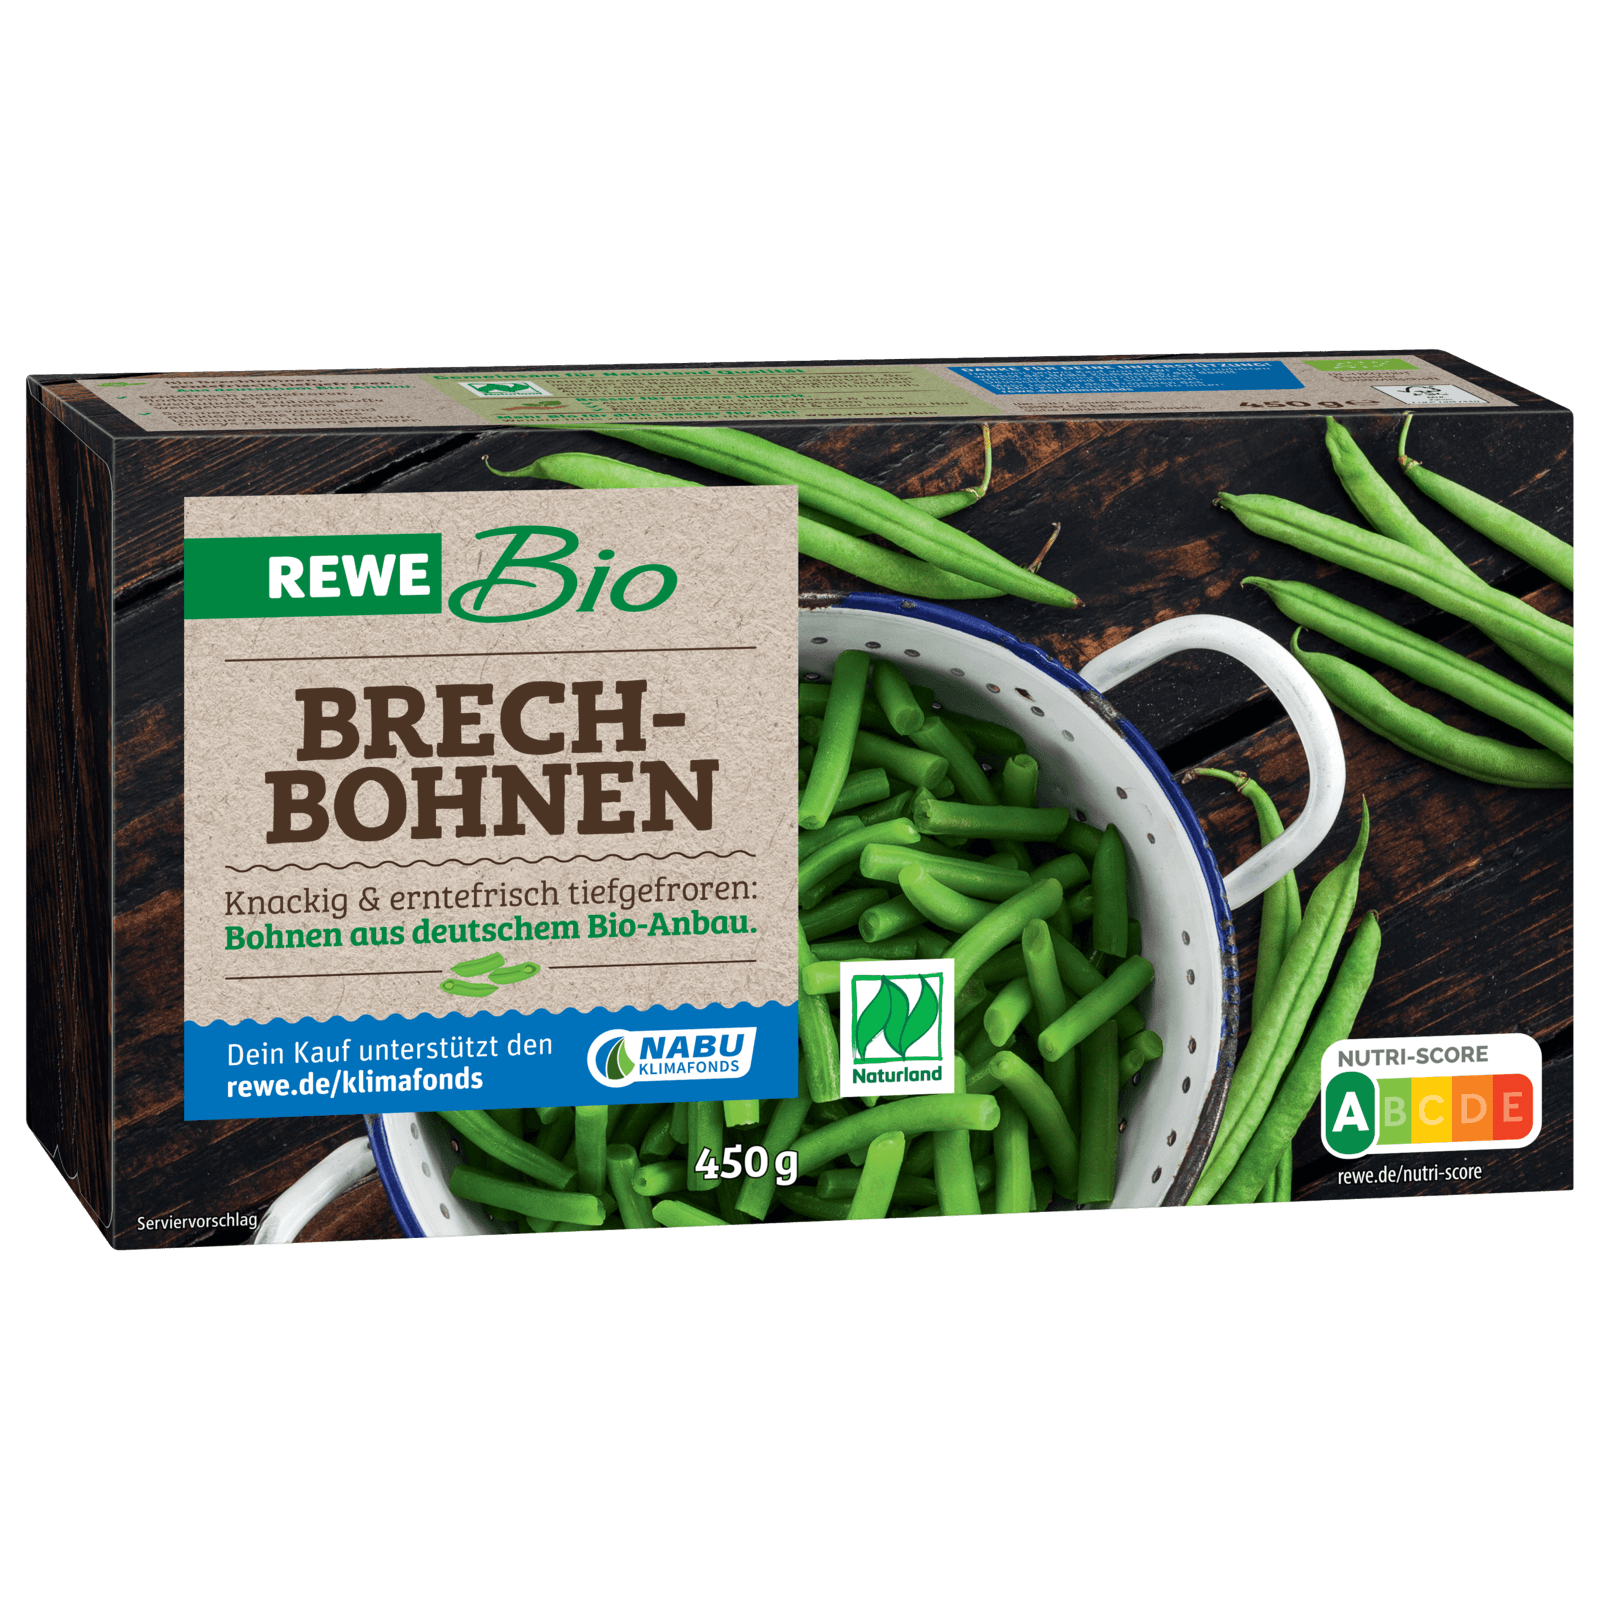 REWE Bio Brechbohnen 450g